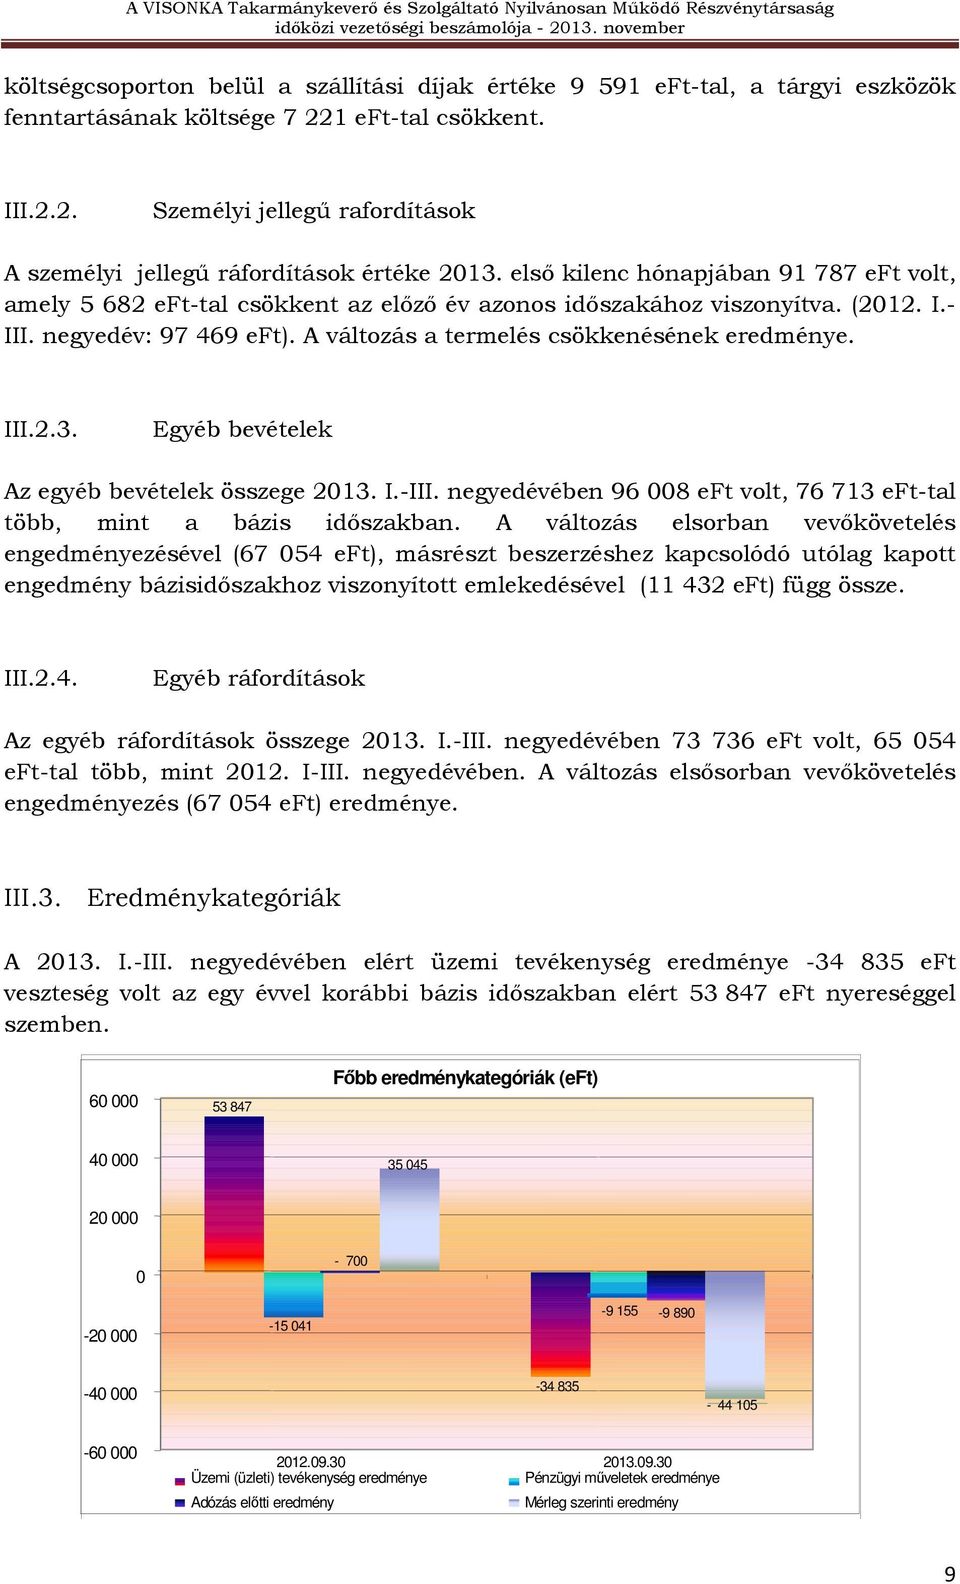 III.2.3. Egyéb bevételek Az egyéb bevételek összege 2013. I.-III. negyedévében 96 008 eft volt, 76 713 eft-tal több, mint a bázis idıszakban.